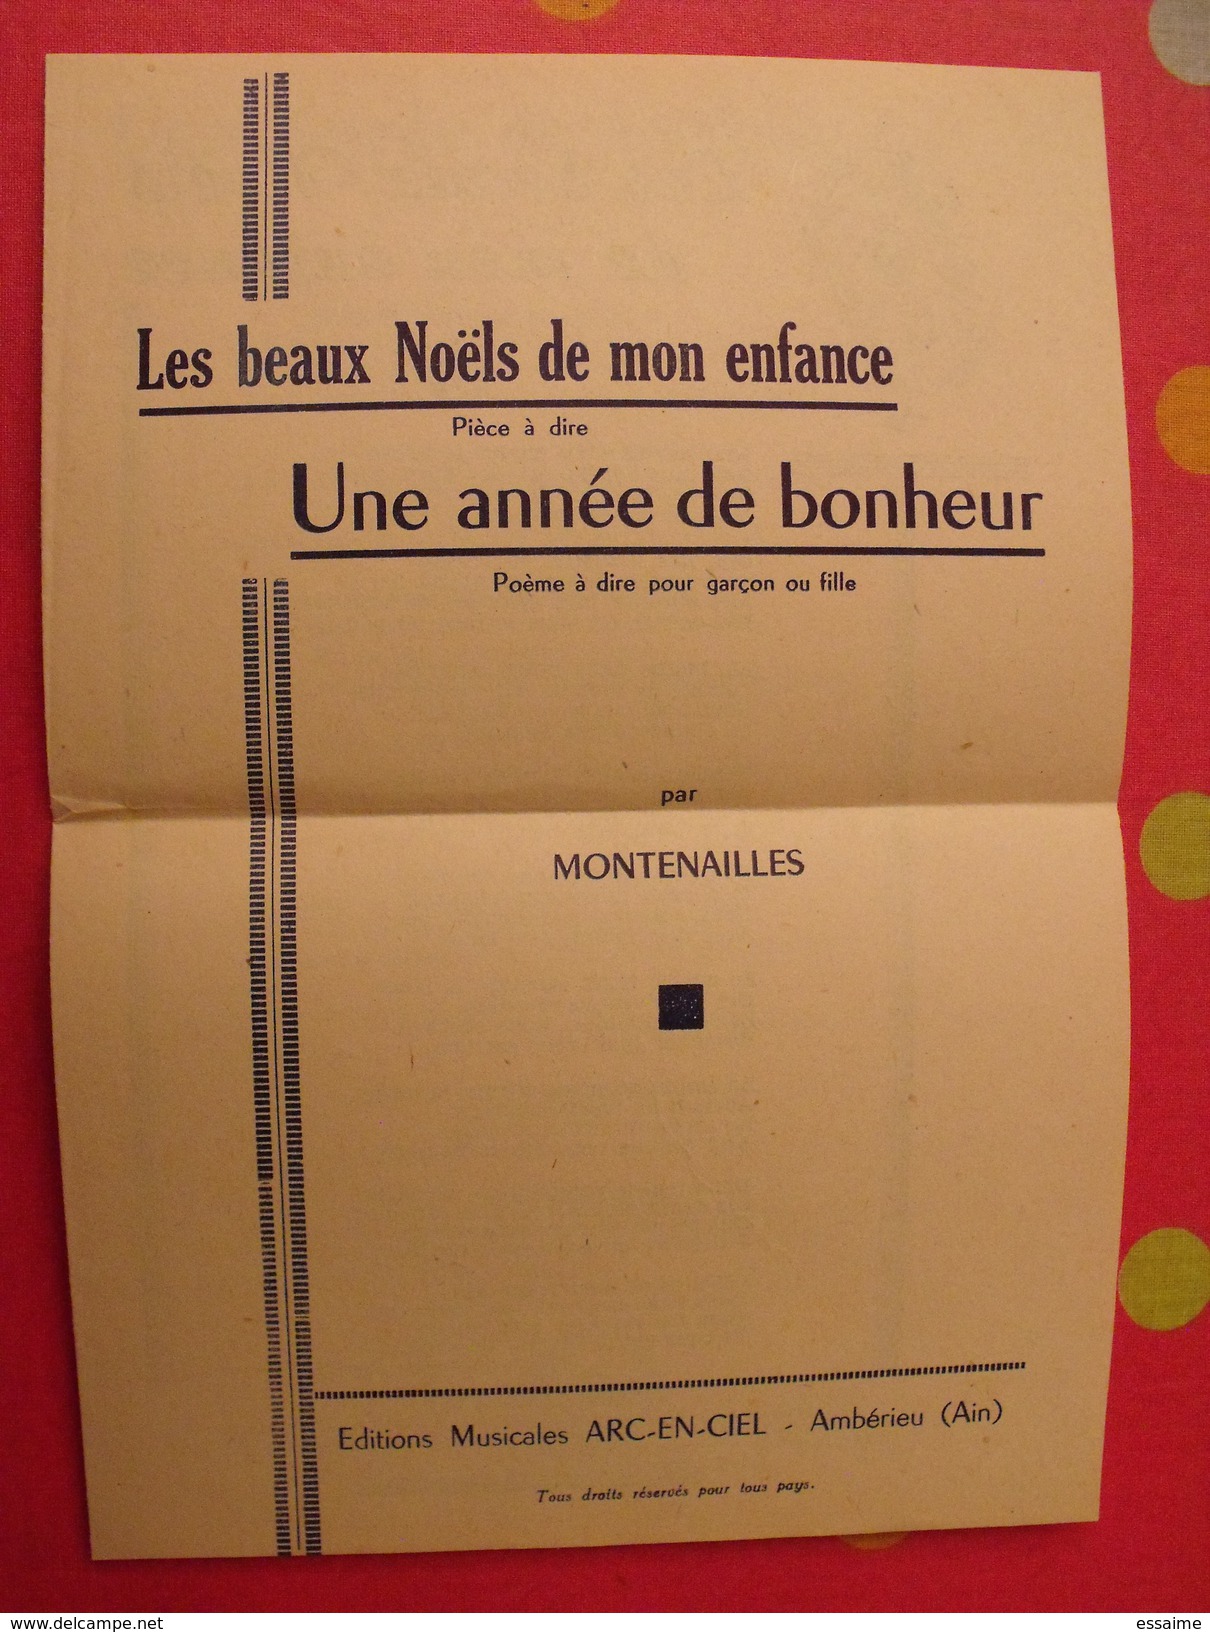 Les Beaux Noels De Mon Enfance. Une Année De Bonheur. Montenailles. Poème. Vers 1930 - Auteurs Français